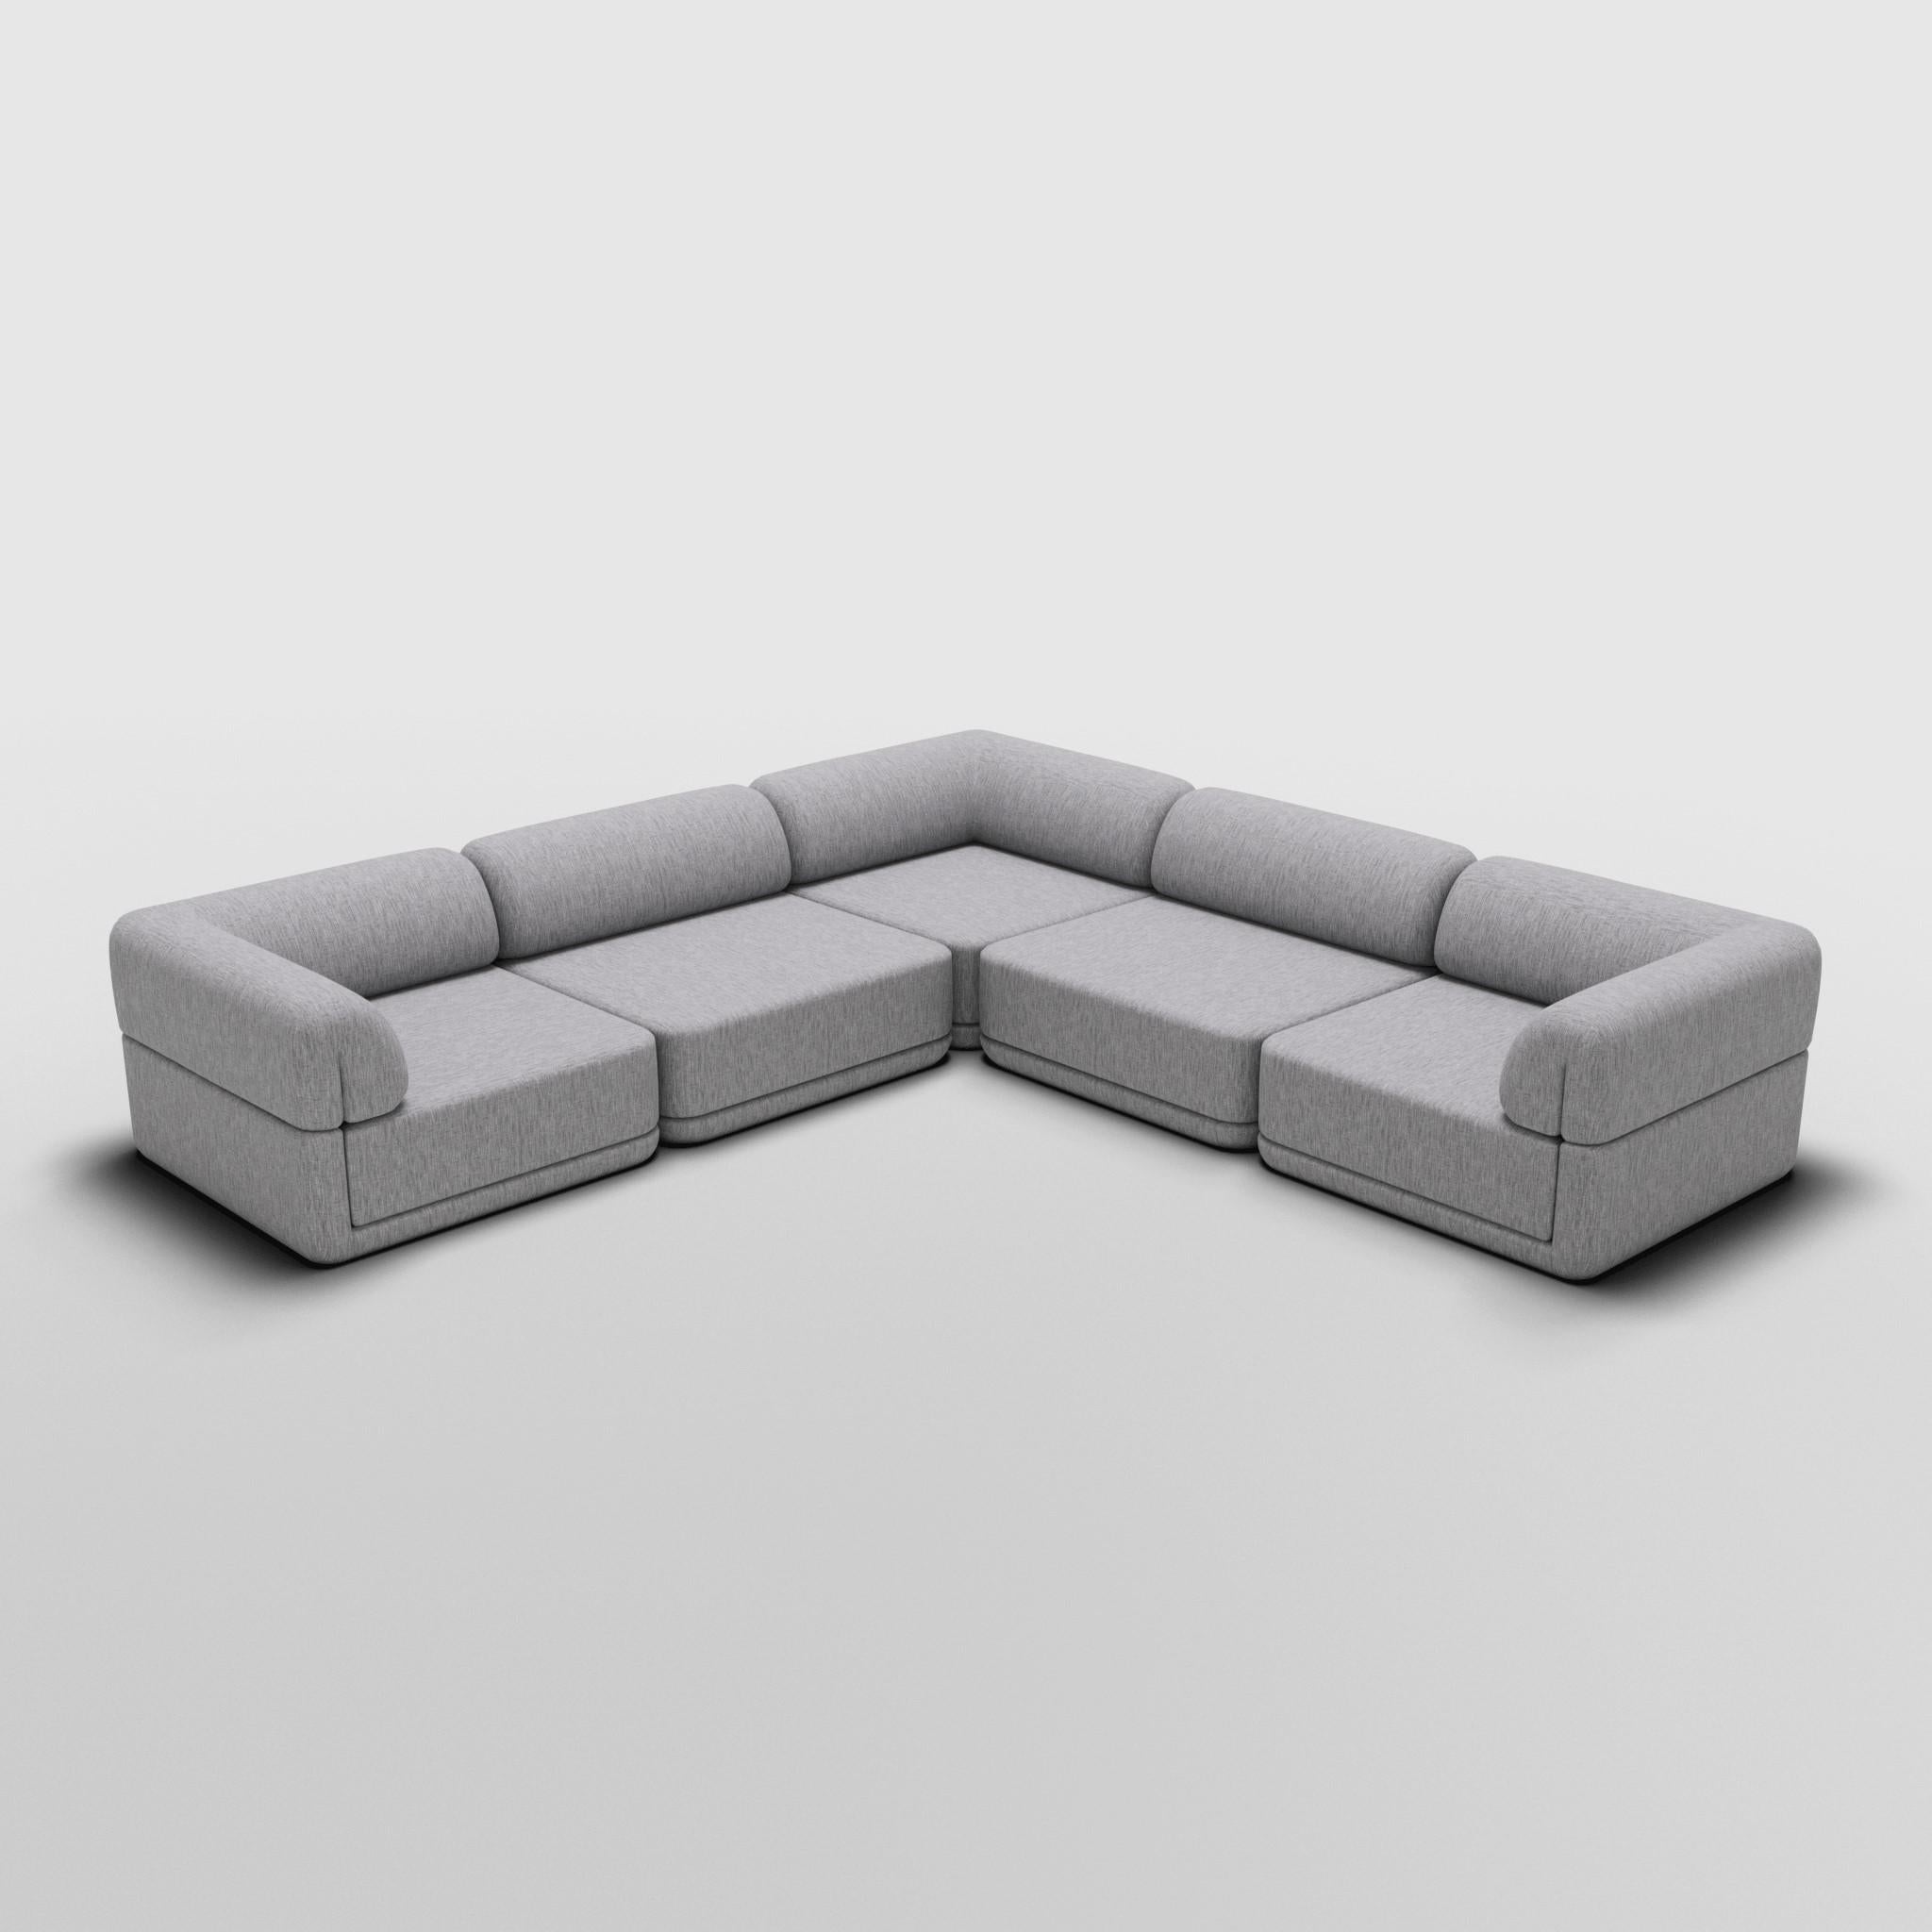 Sectionnel d'angle - Inspiré par les meubles de luxe italiens des années 70

Découvrez le canapé Cube, où l'art rencontre l'adaptabilité. Son design sculptural et son confort personnalisable créent des possibilités infinies pour votre espace de vie.